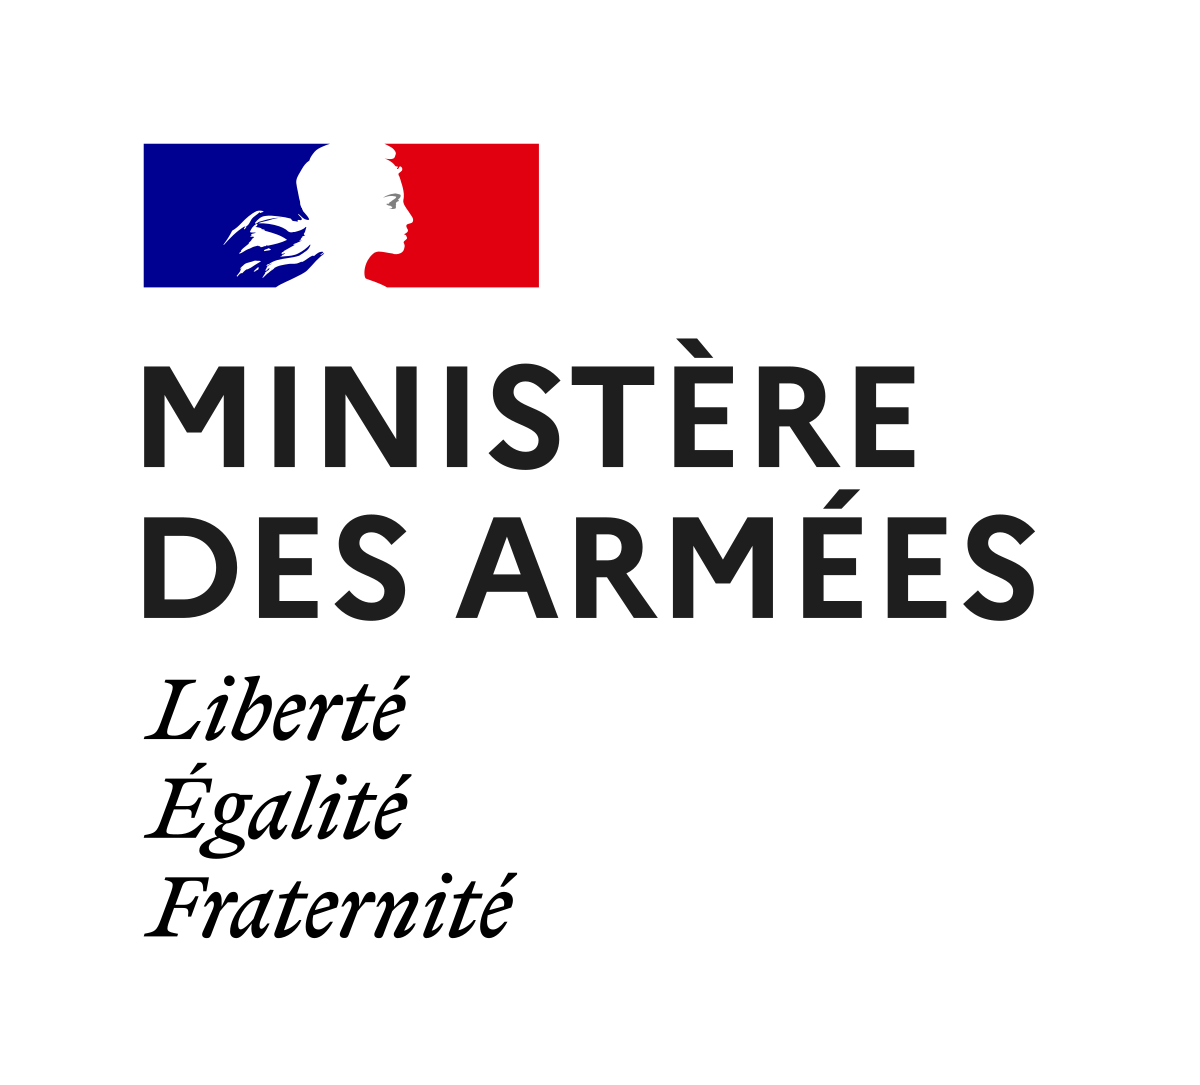 Ministere des Armees.svg